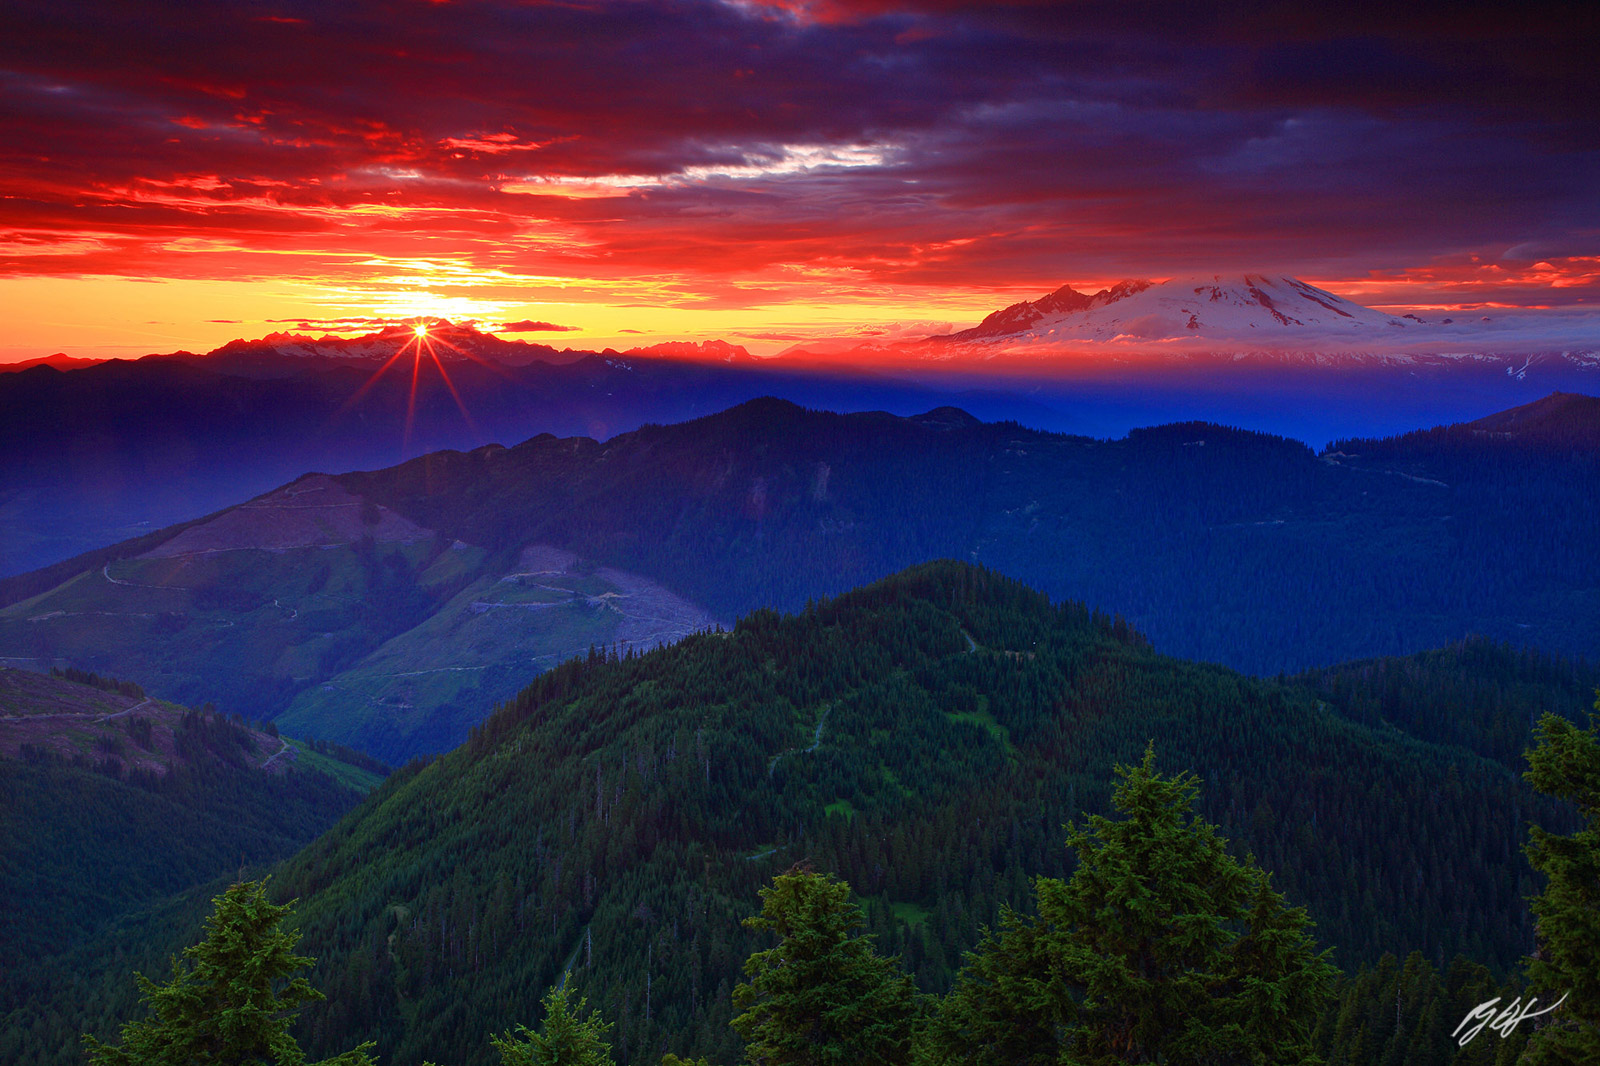 Sunset and Sun Star with Mt Baker from Sauk Mountain Summit, Washington